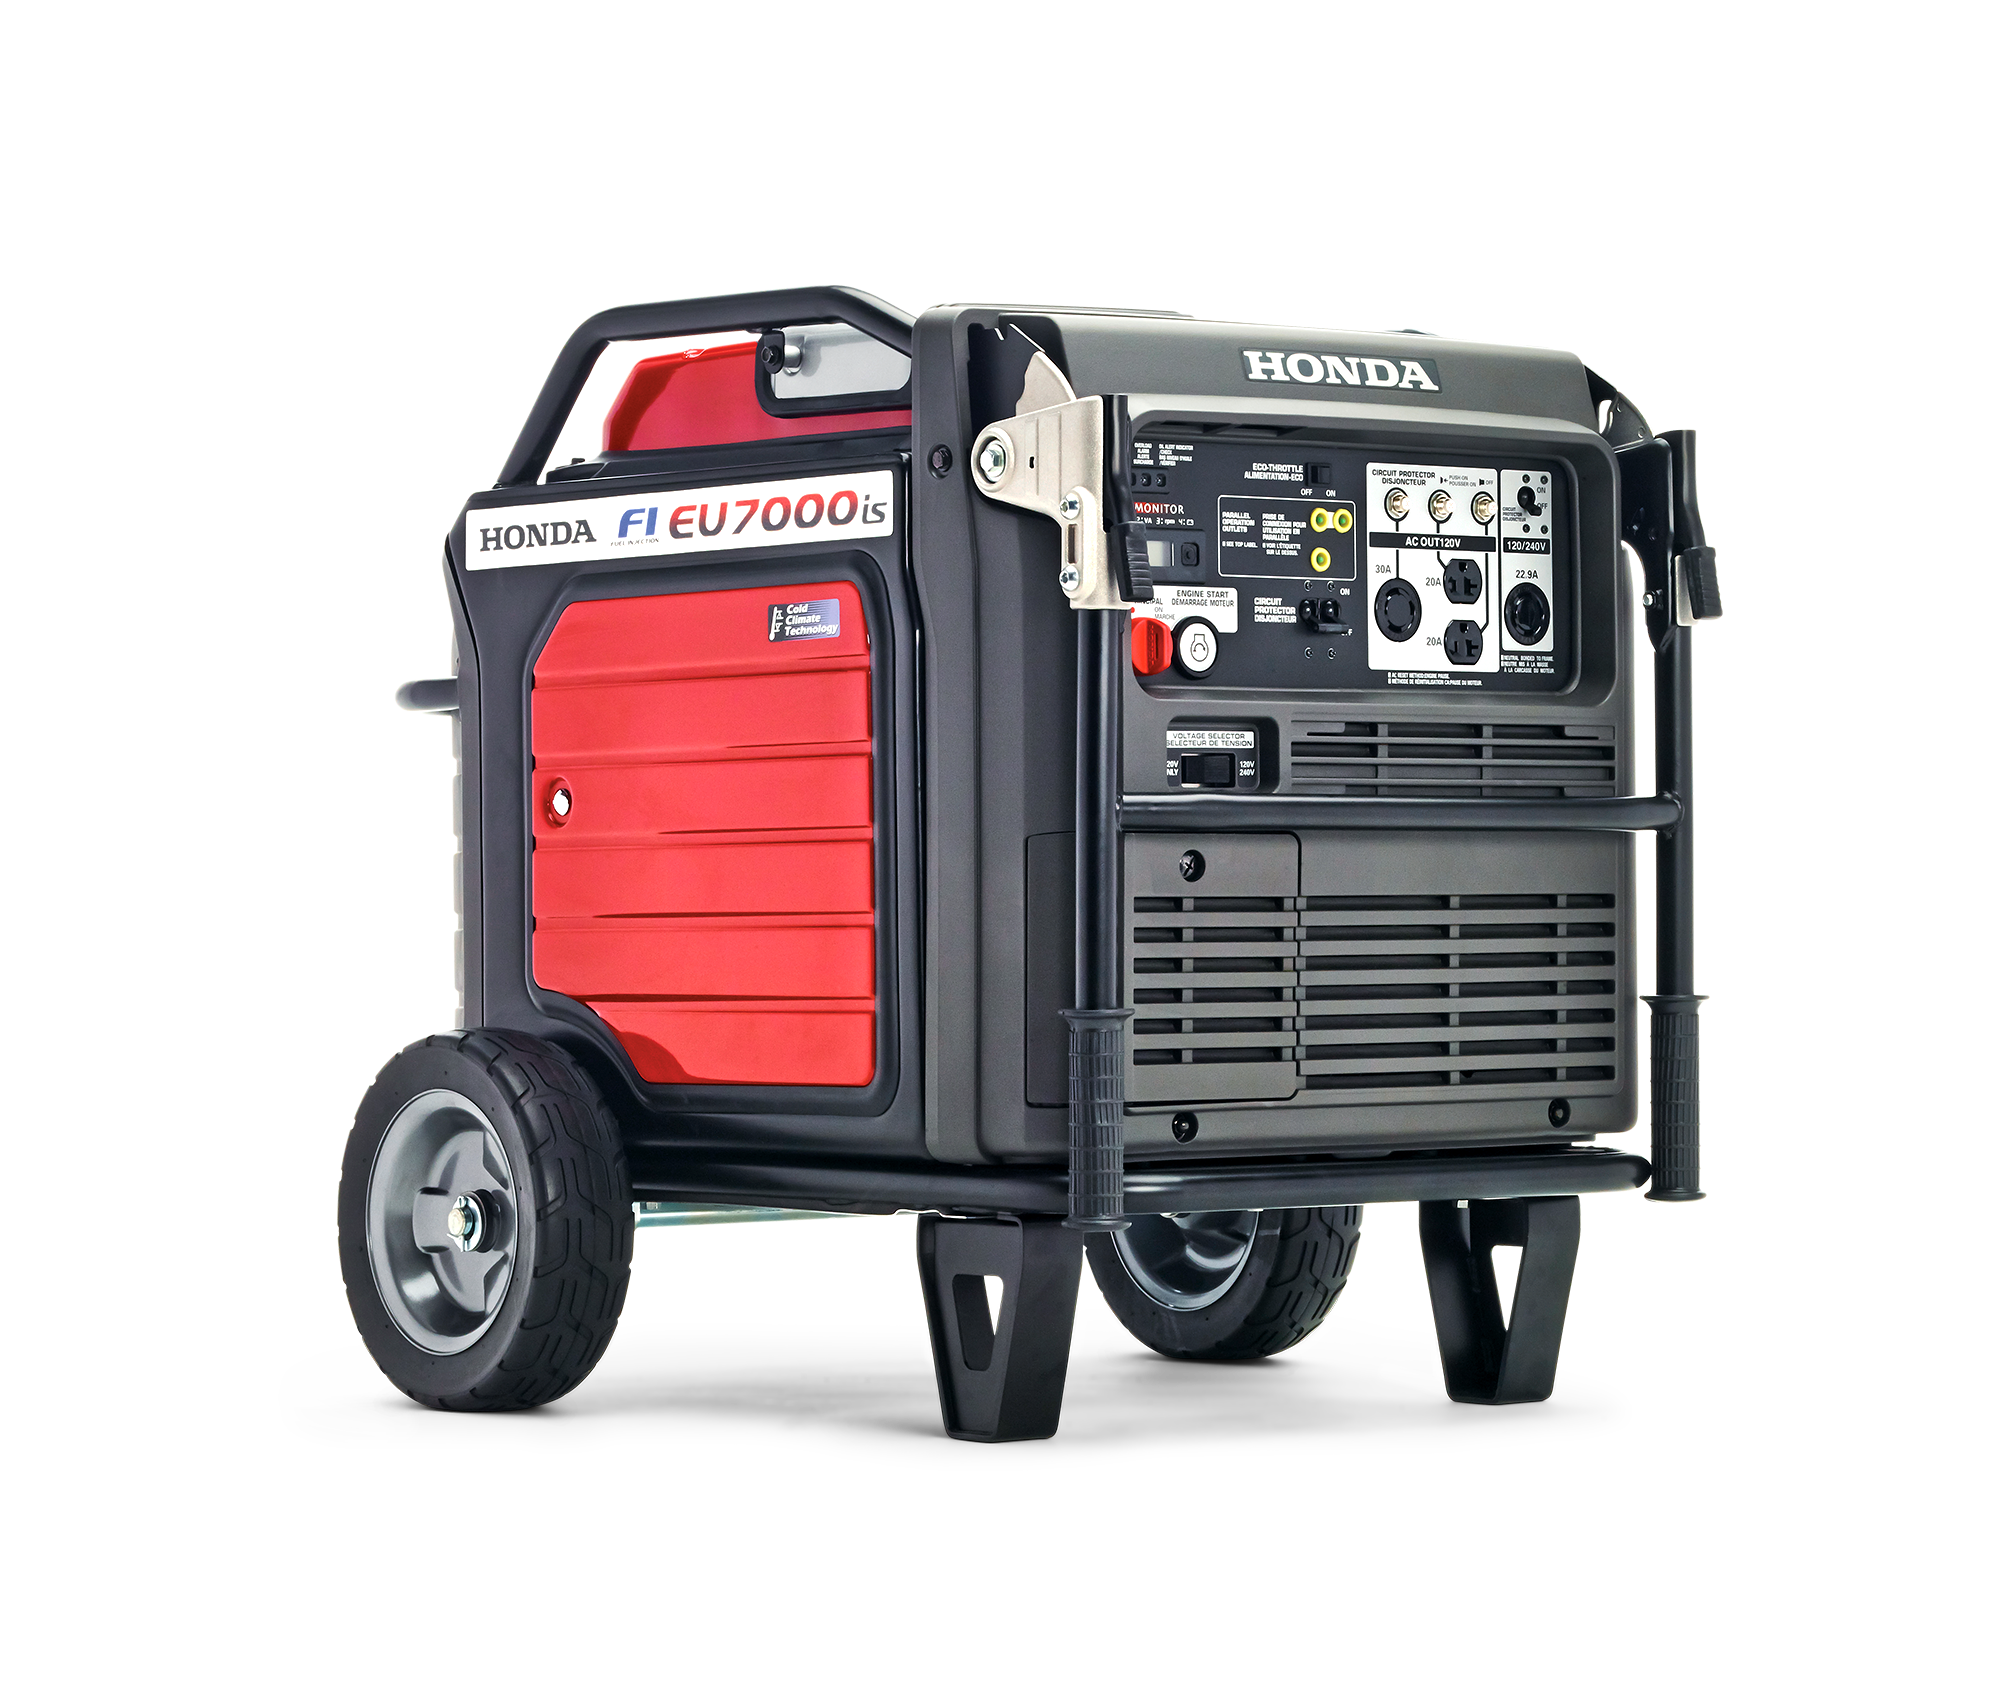 Image of the Ultra-Quiet 7000i ES generator